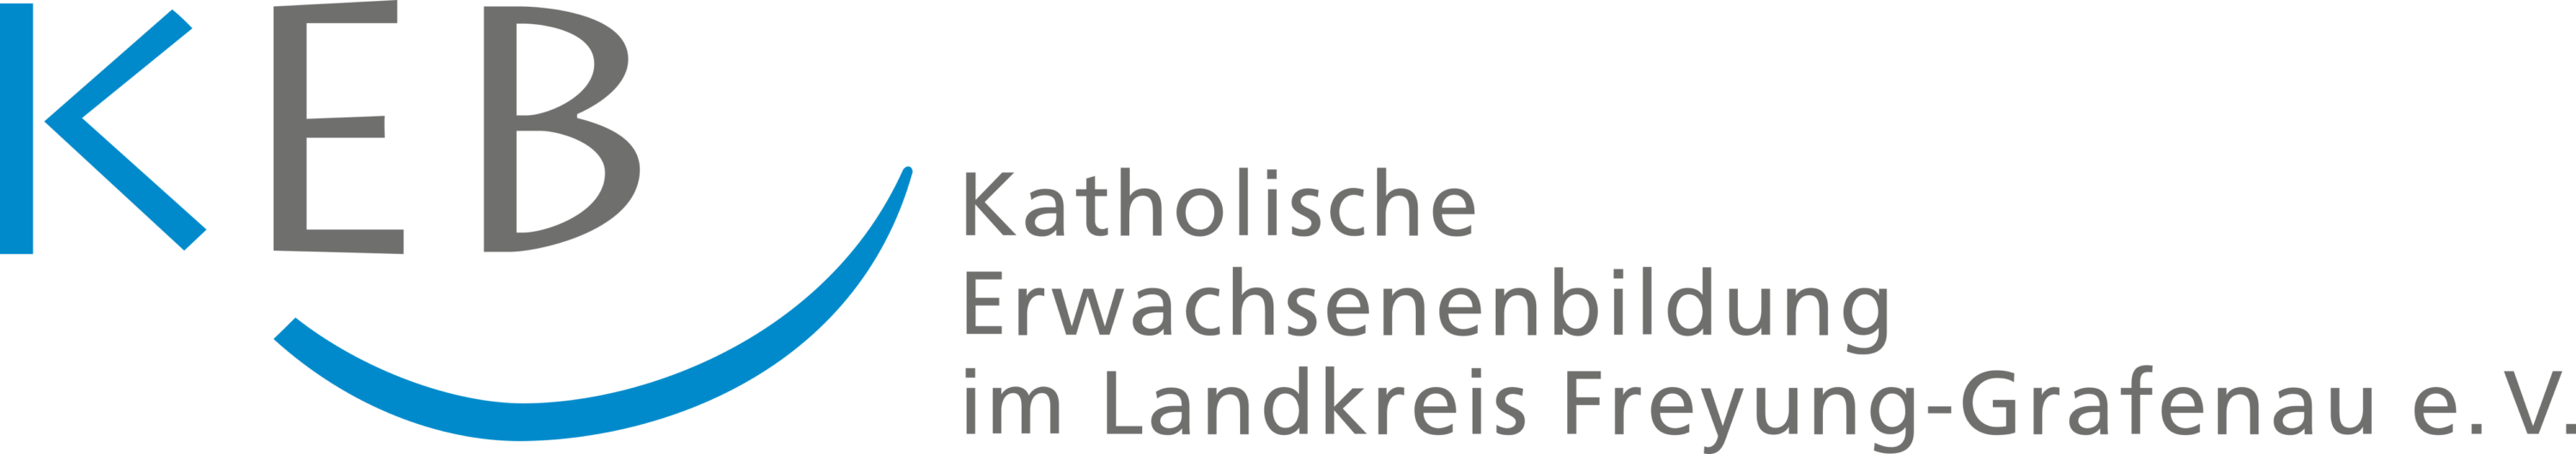 Katholische Erwachsenenbildung Logo